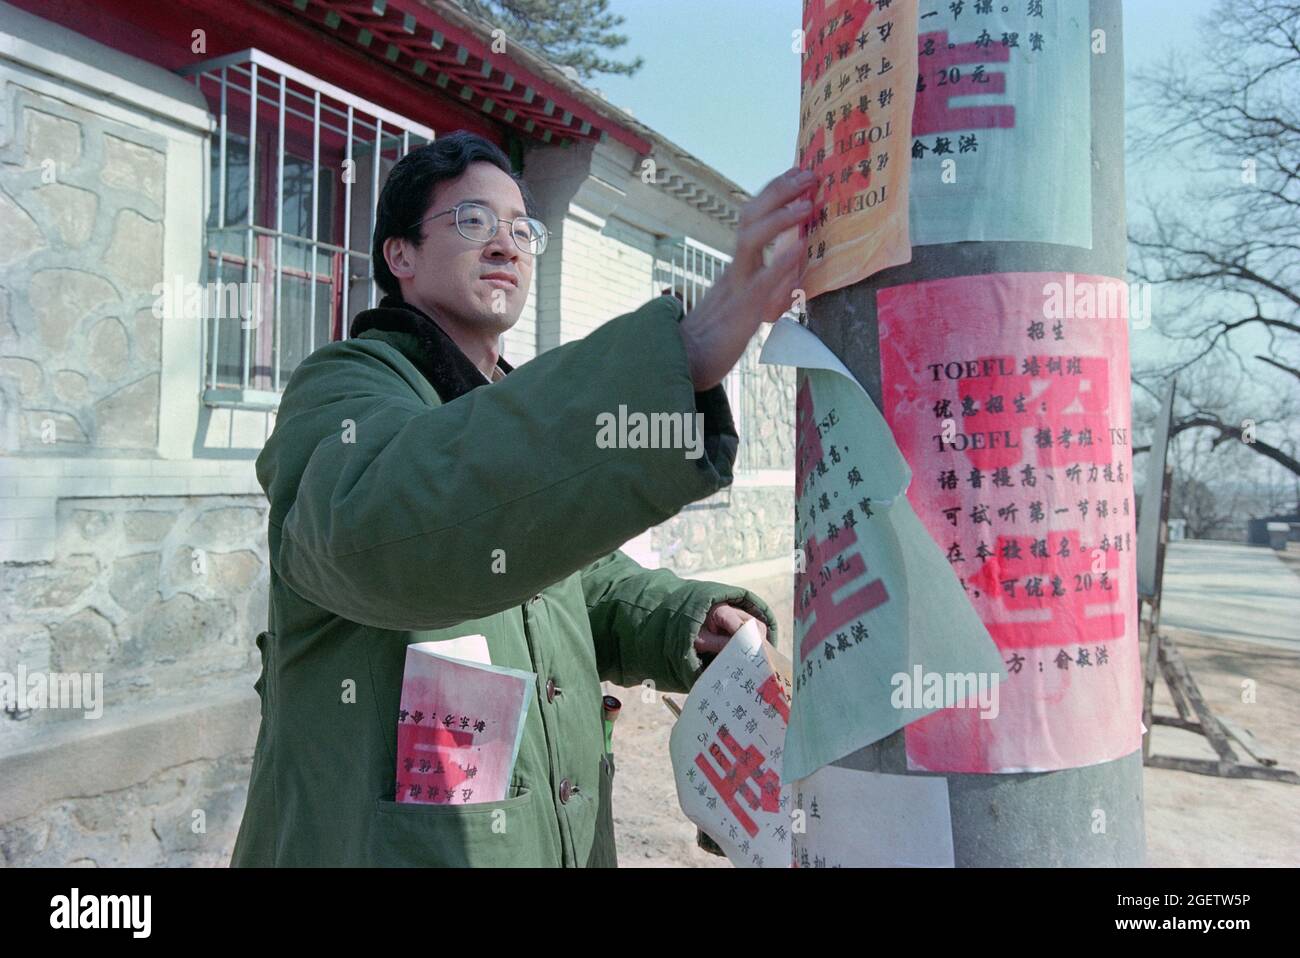 Yu Minhong reproduce el trabajo duro temprano de comenzar un negocio—publicando anuncios para la formación en inglés y la inscripción a lo largo de la calle.2000 Foto de stock